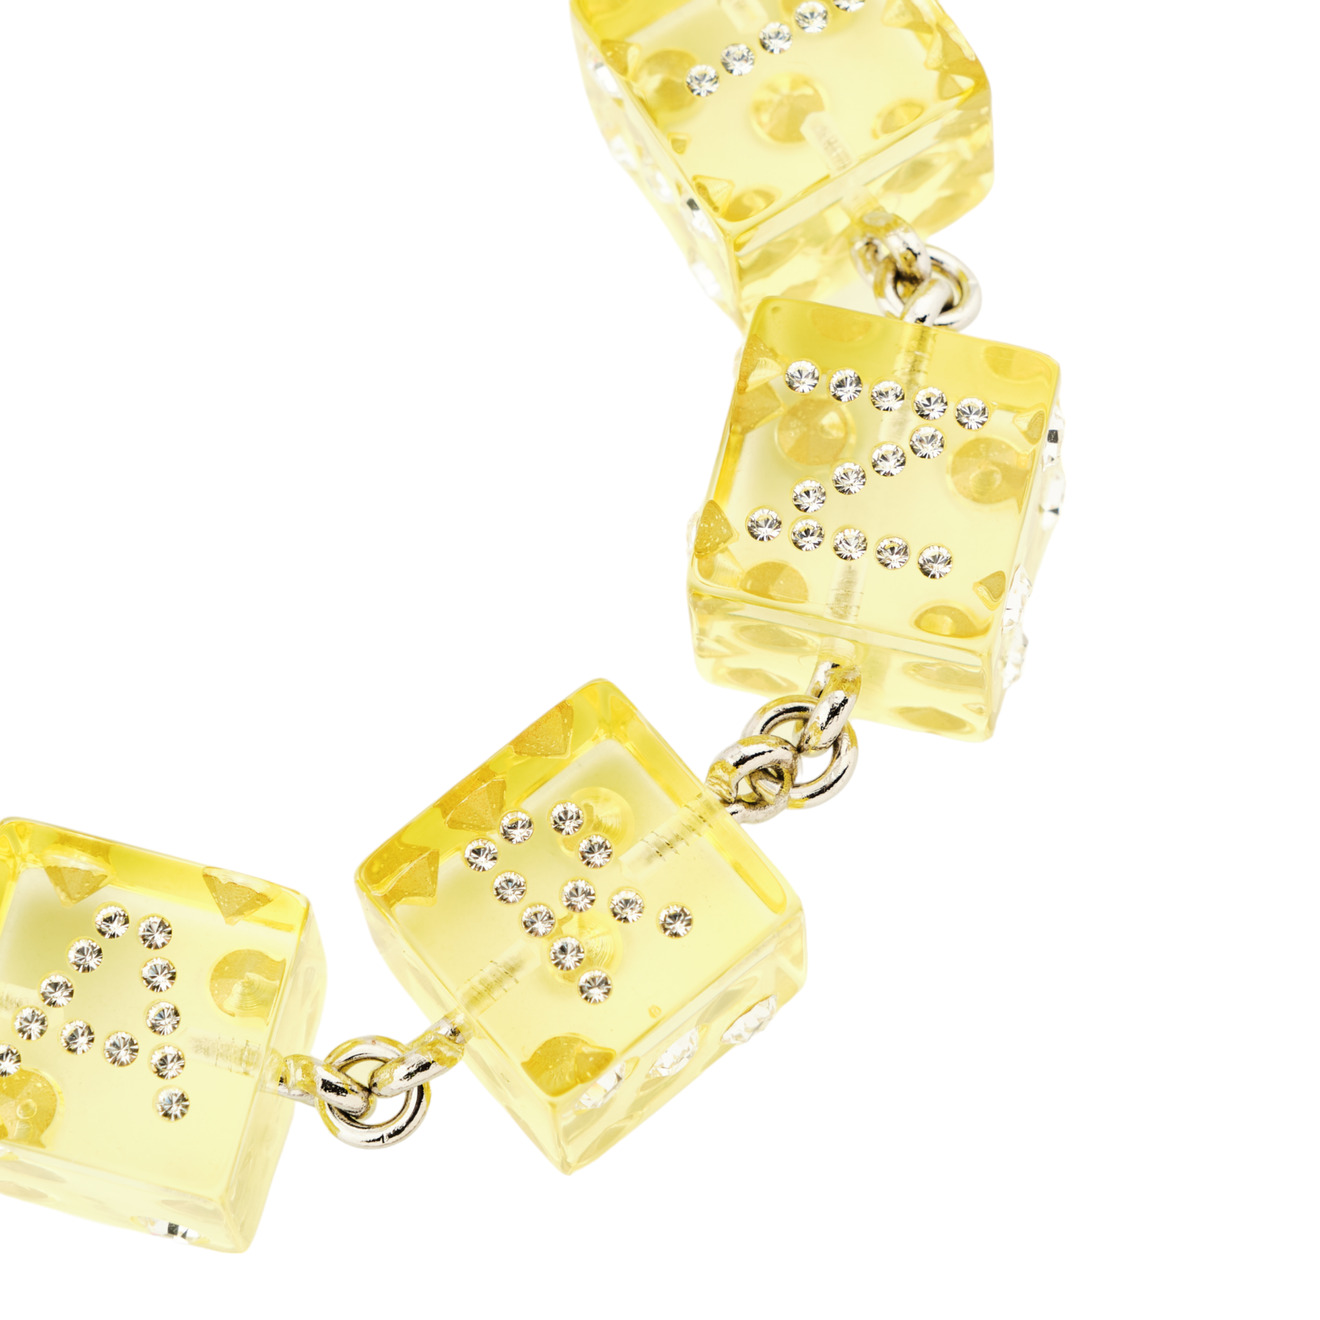 Marni Браслет с желтыми объемными кубиками и кристаллами marni браслет с эмалированными буквами marni marni x no vacancy inn